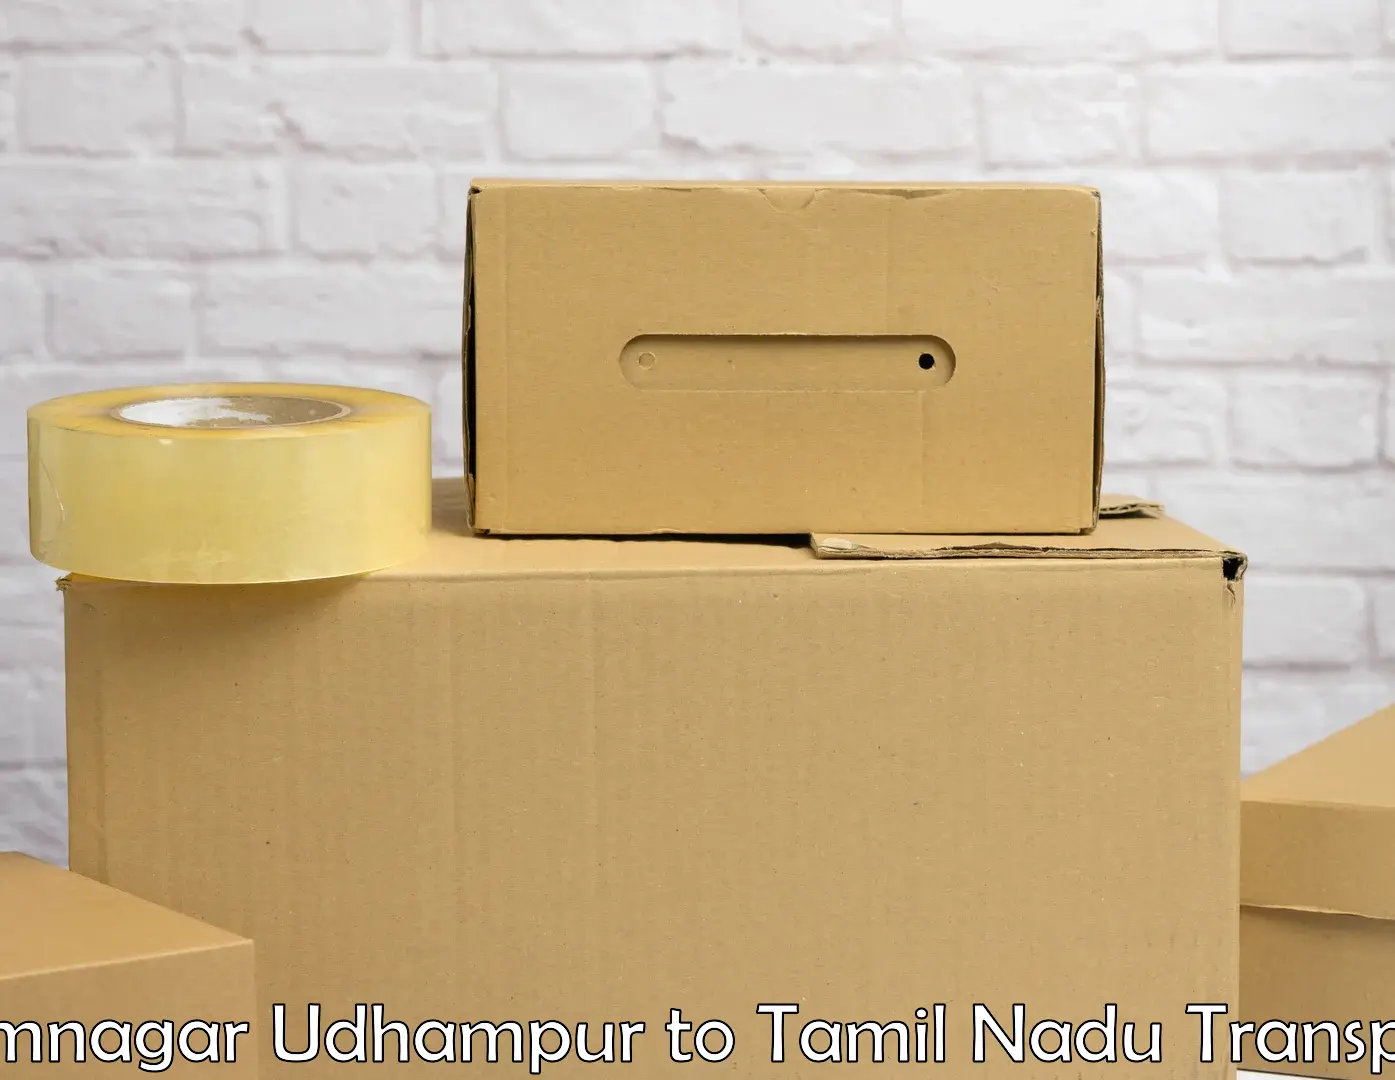 Shipping partner Ramnagar Udhampur to Cheyyar